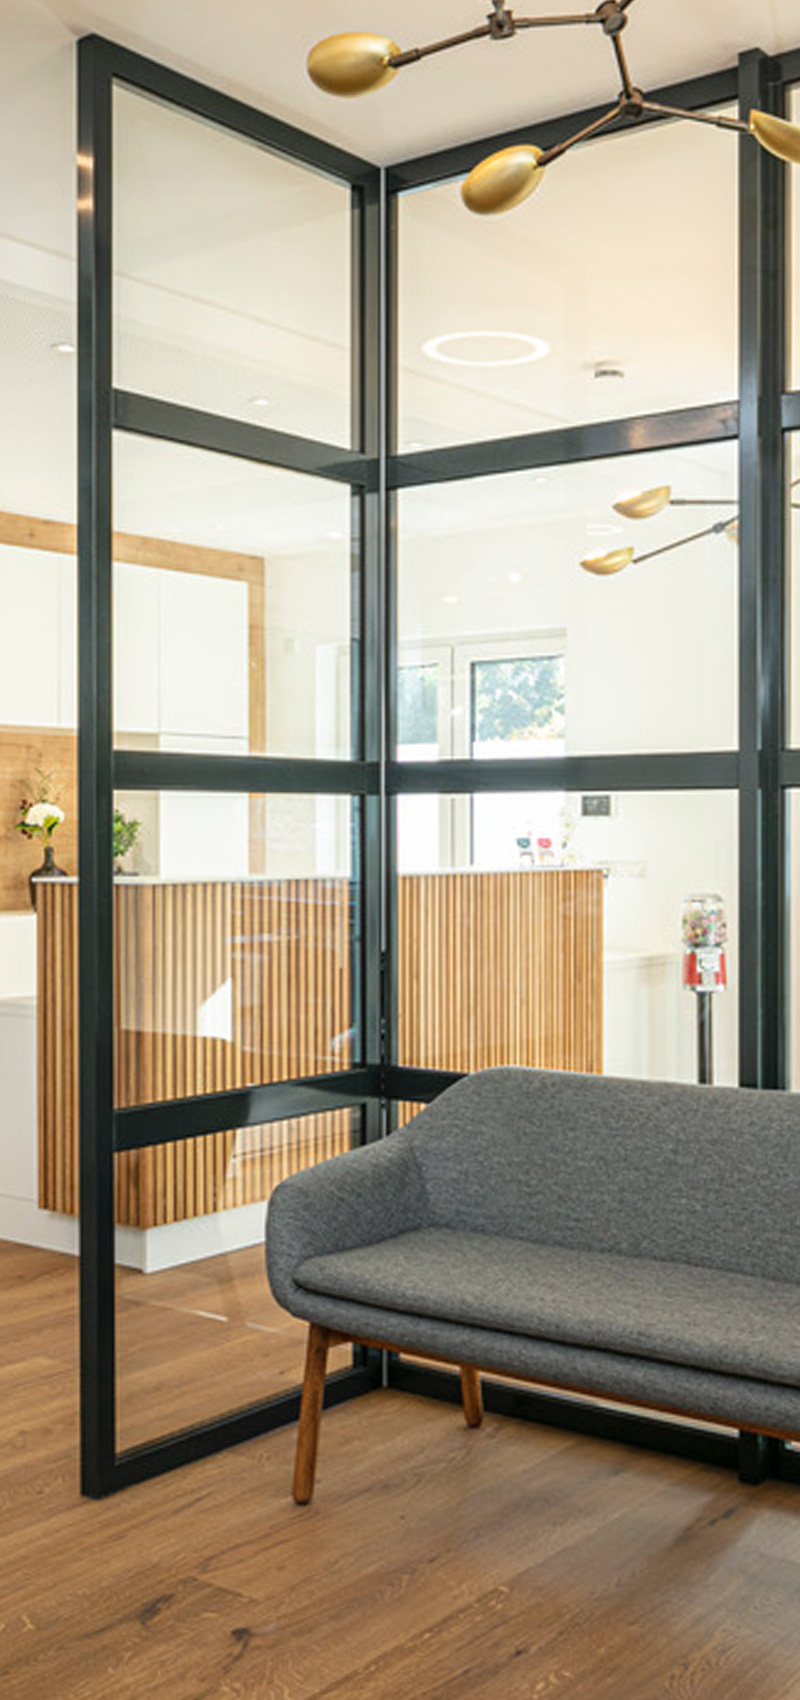 Unsere lichtdurchflutete Lounge mit schönen Möbeln in skaninavischem Design